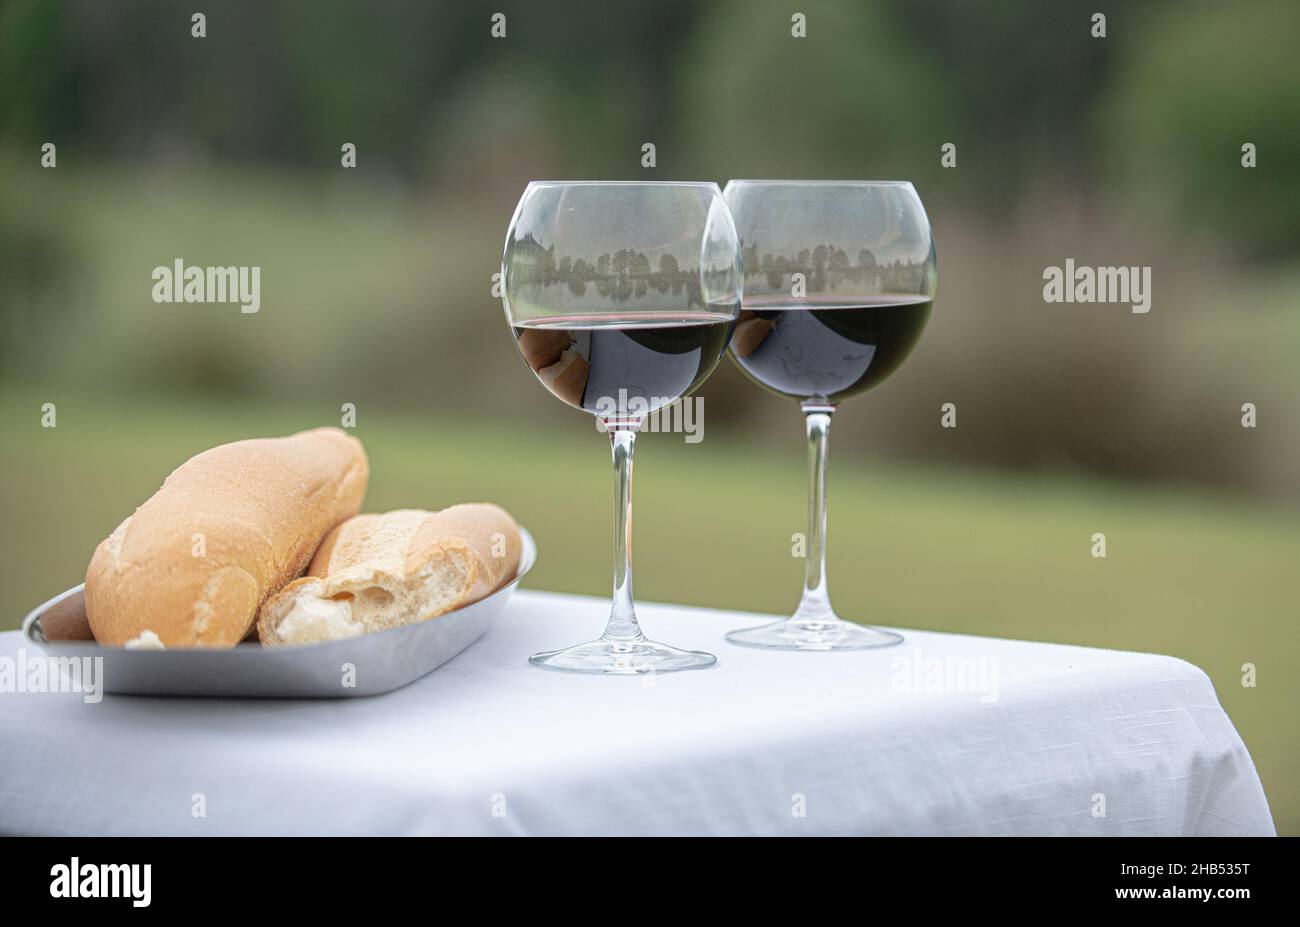 La cerimonia di nozze di rottura del pane ha riempito i vetri del vino e il pane all'aperto Foto Stock